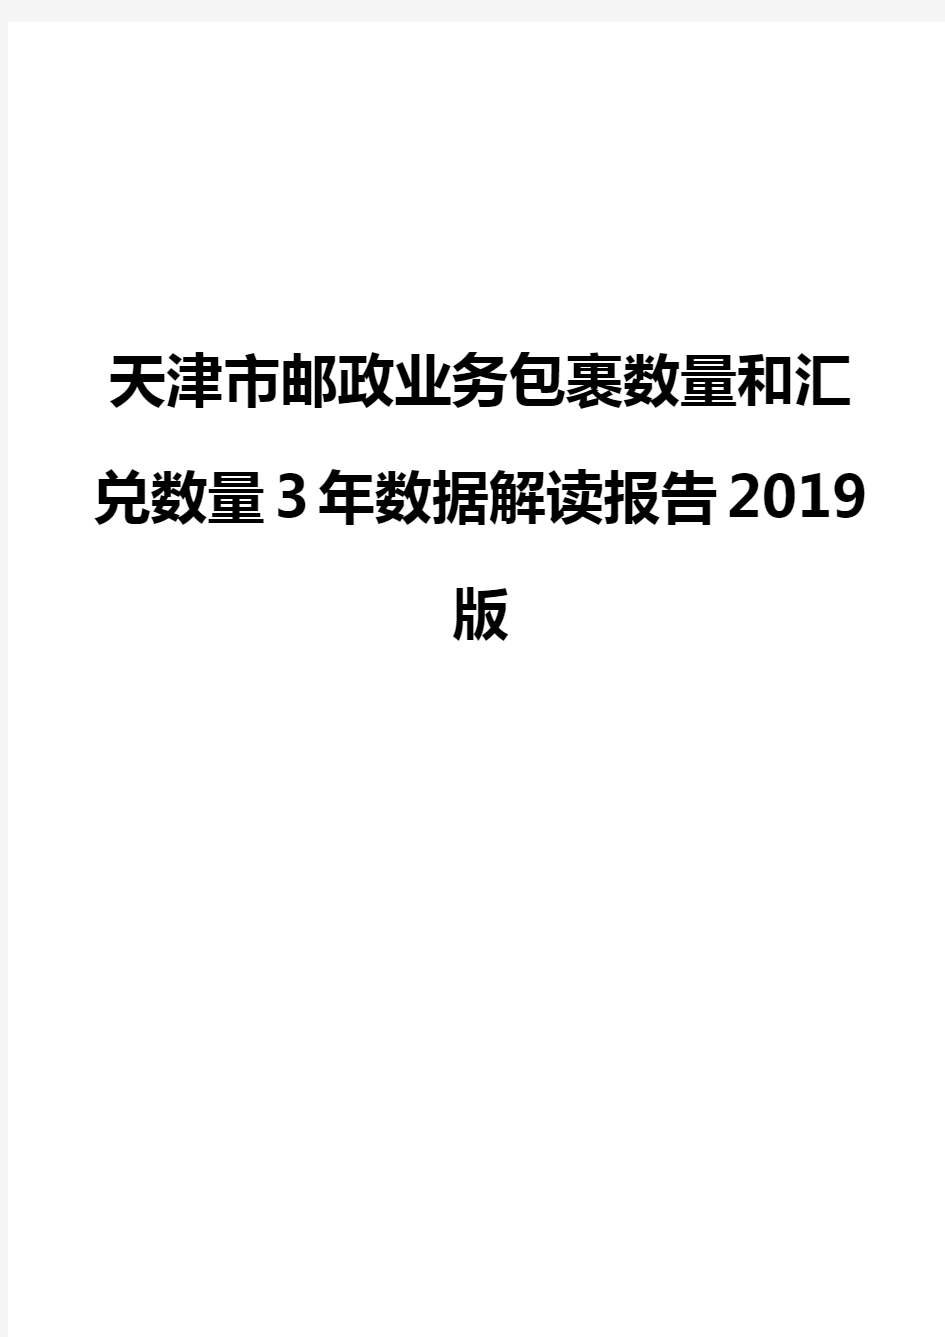 天津市邮政业务包裹数量和汇兑数量3年数据解读报告2019版